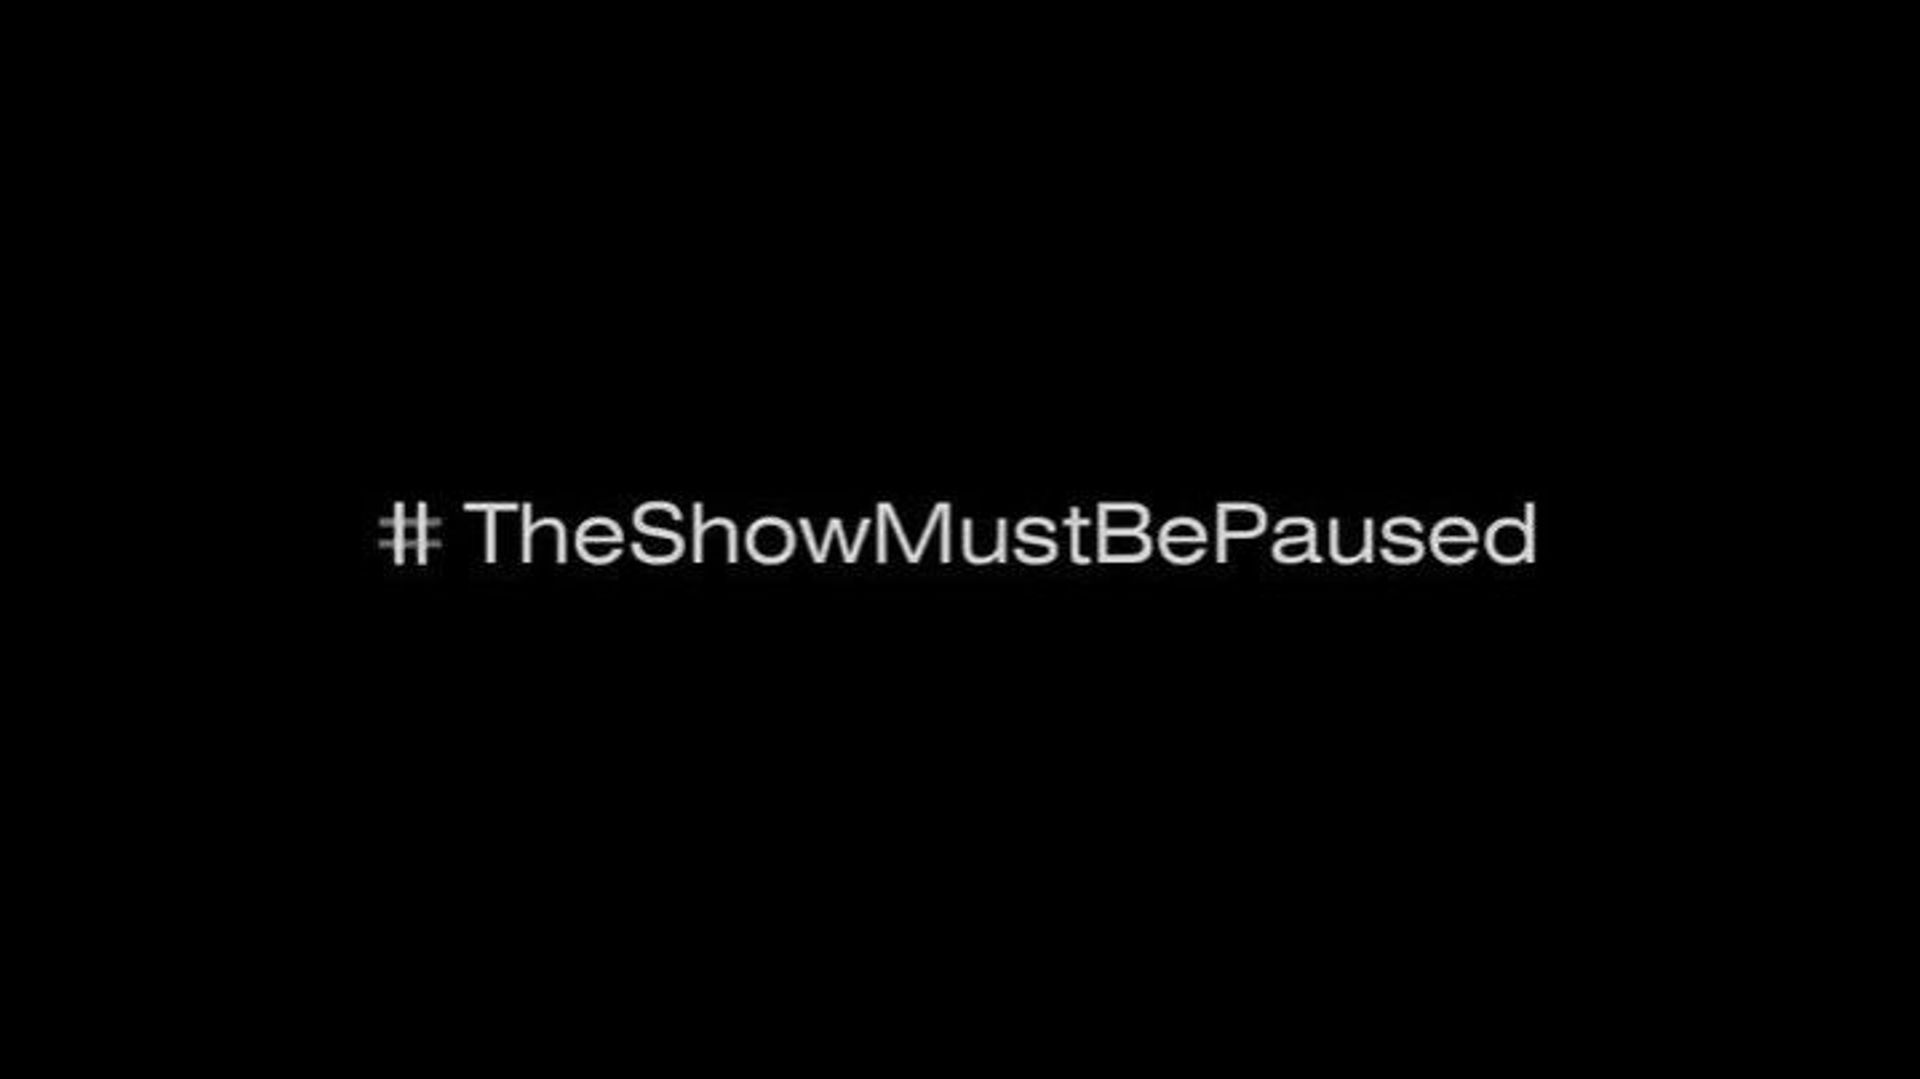 Le monde de la musique a suivi le mouvement #TheShowMustBePaused